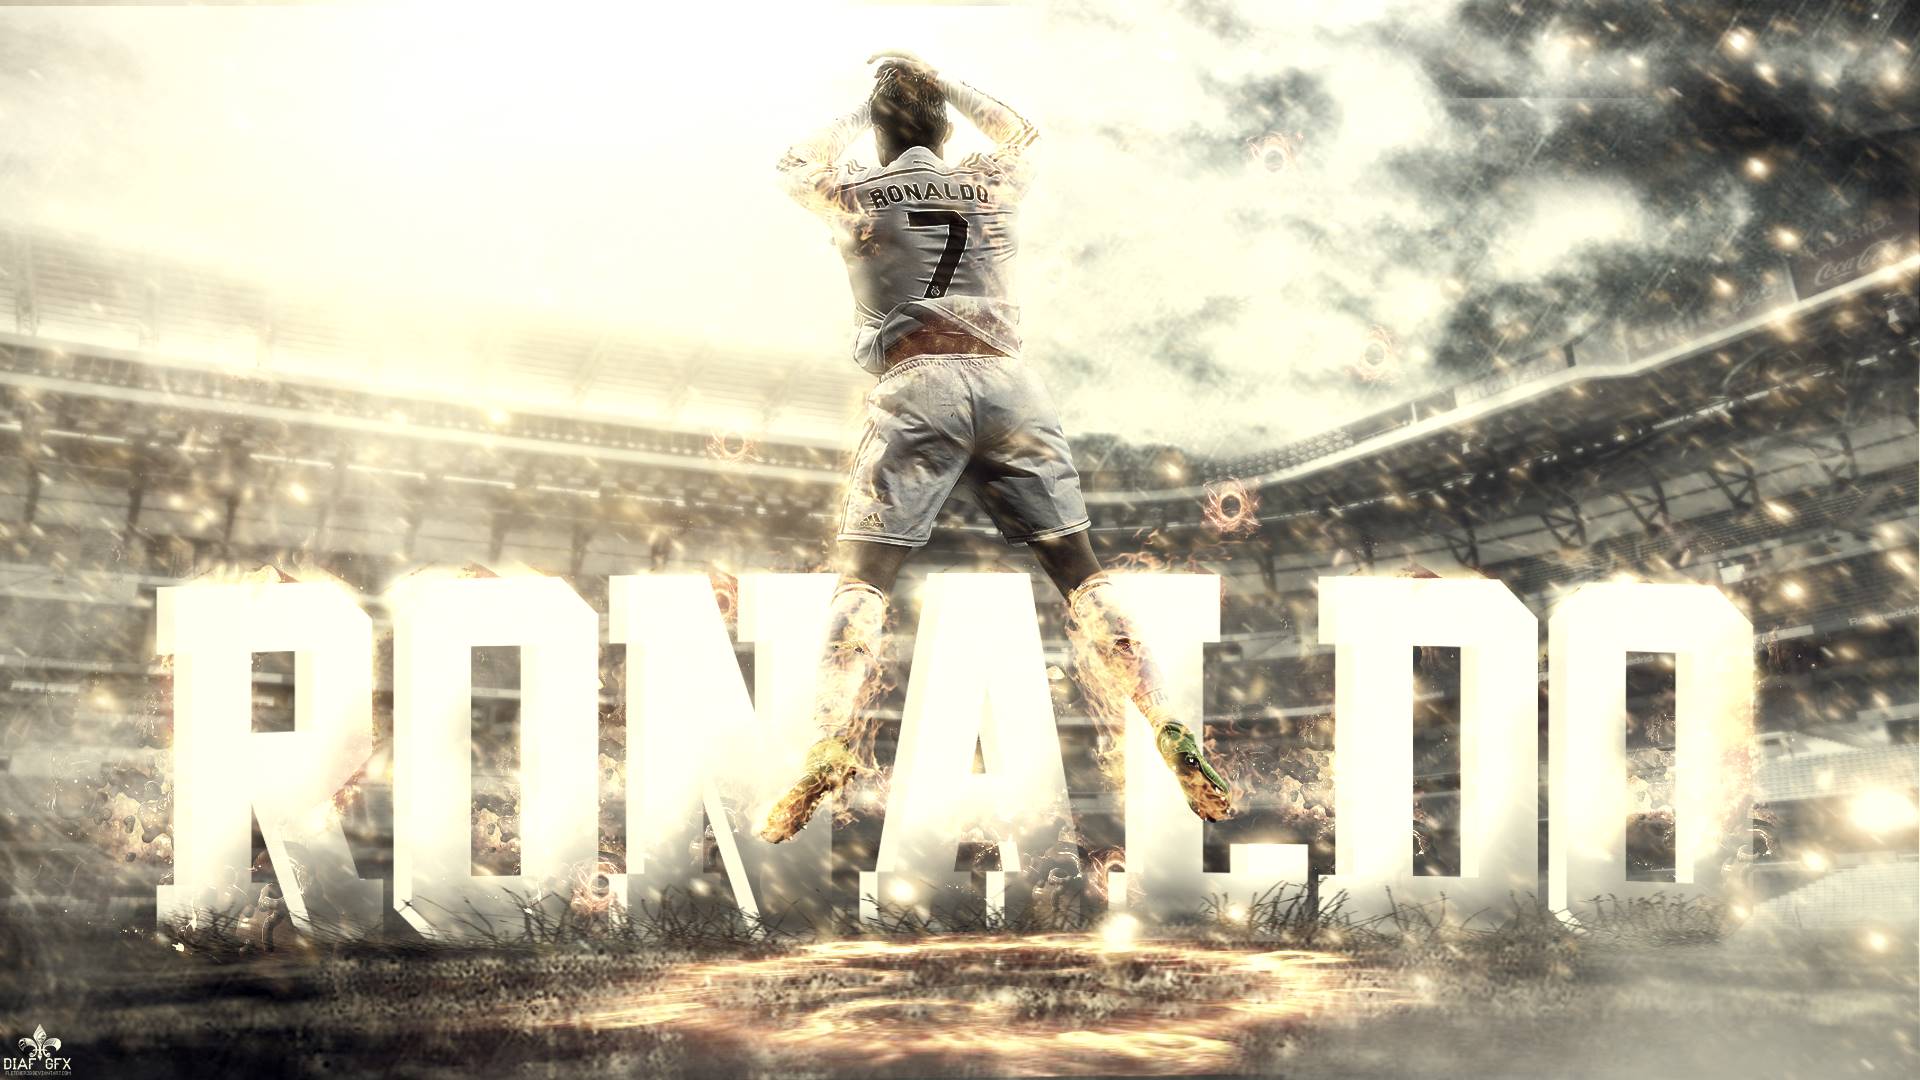 Cristiano Ronaldo New Wallpaper. Cristiano Ronaldo Fan. News